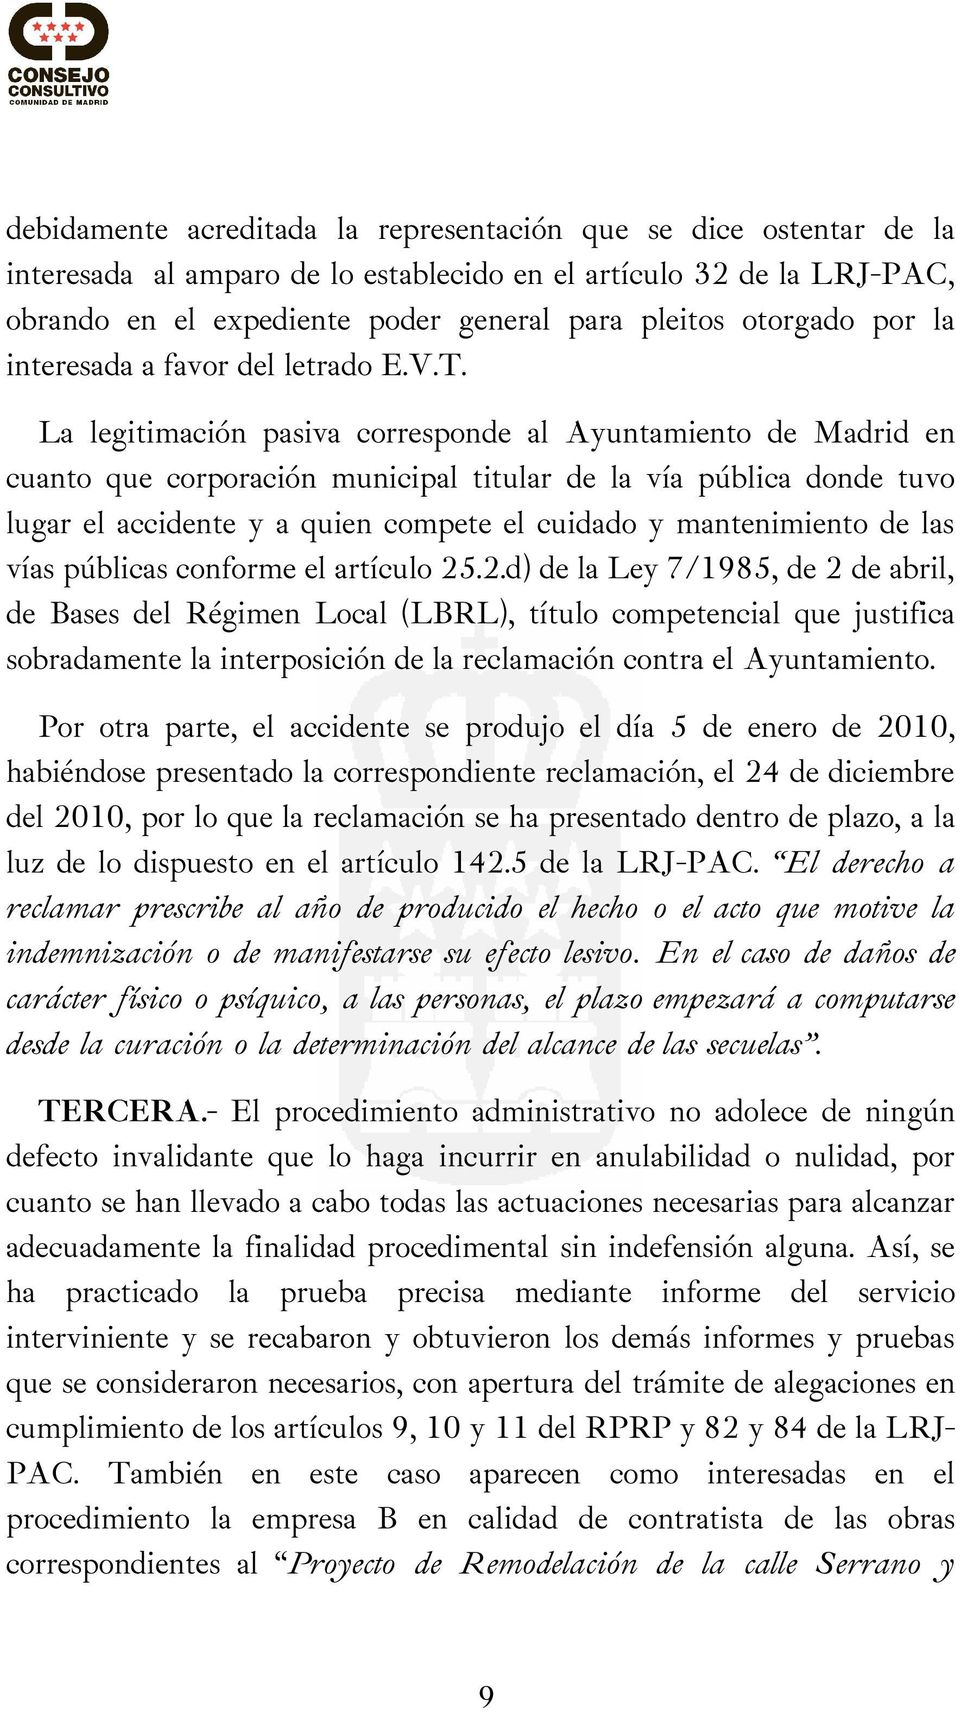 La legitimación pasiva corresponde al Ayuntamiento de Madrid en cuanto que corporación municipal titular de la vía pública donde tuvo lugar el accidente y a quien compete el cuidado y mantenimiento